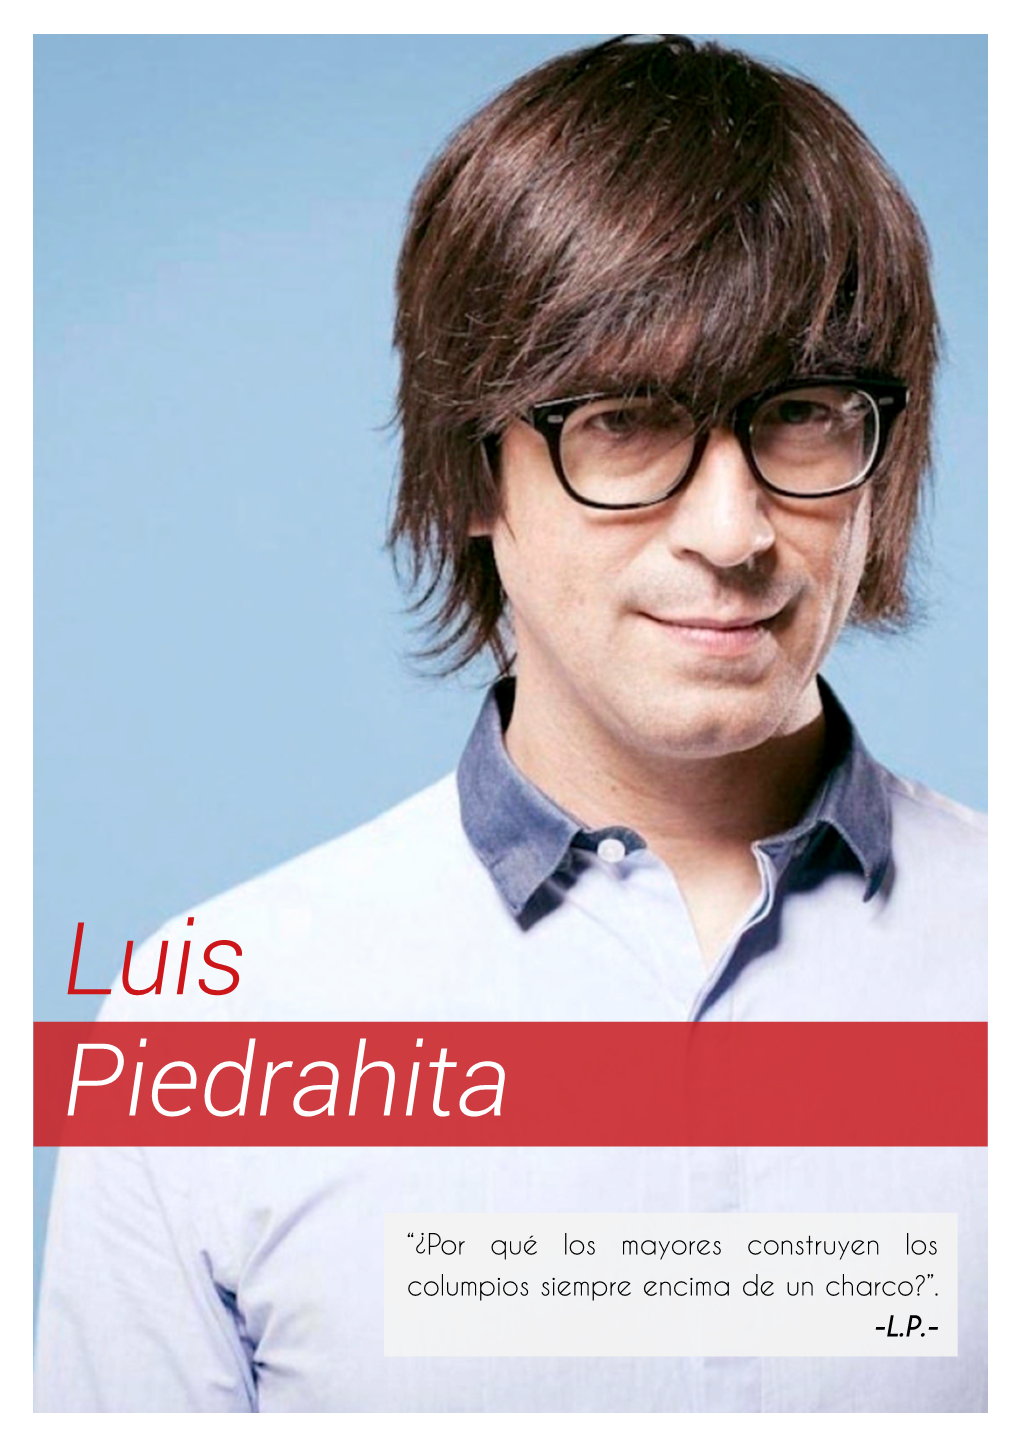 Luis Piedrahita